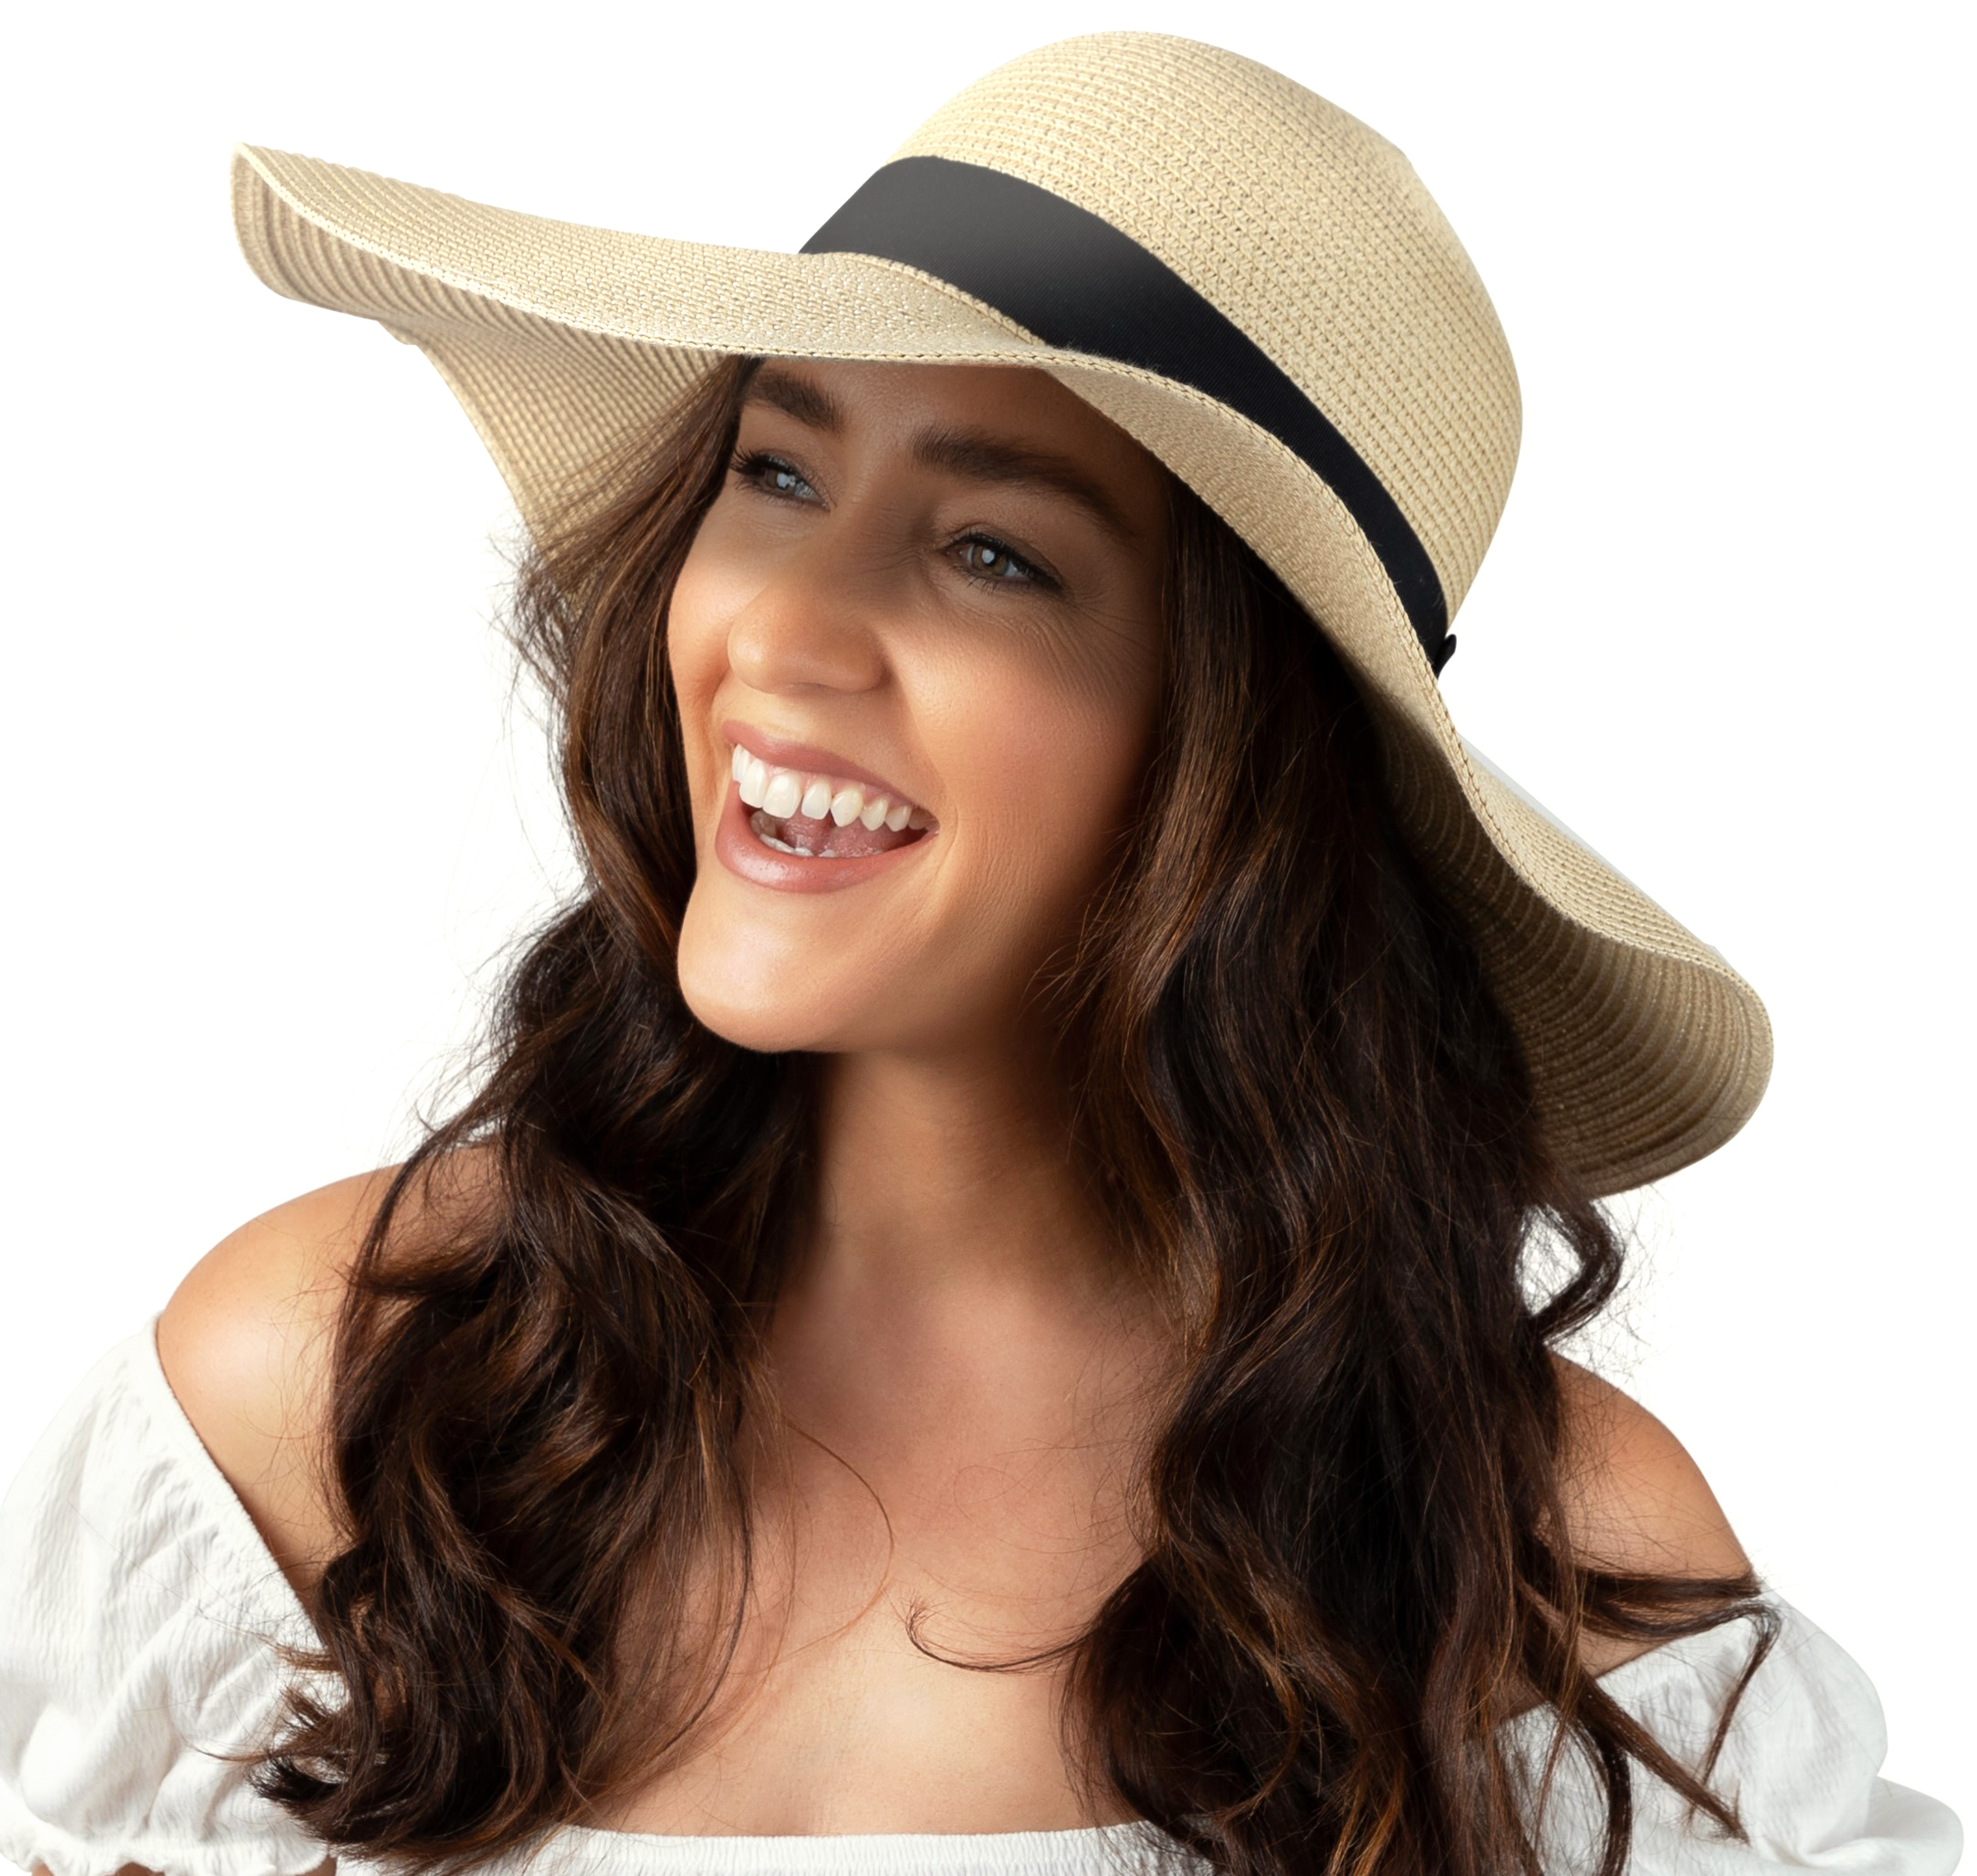 Debra Weitzner Women Floppy Sun Hat with Wide Brim—Foldable Roll-Up Straw Beach Hat UPF 50, Medium Beige - image 1 of 8